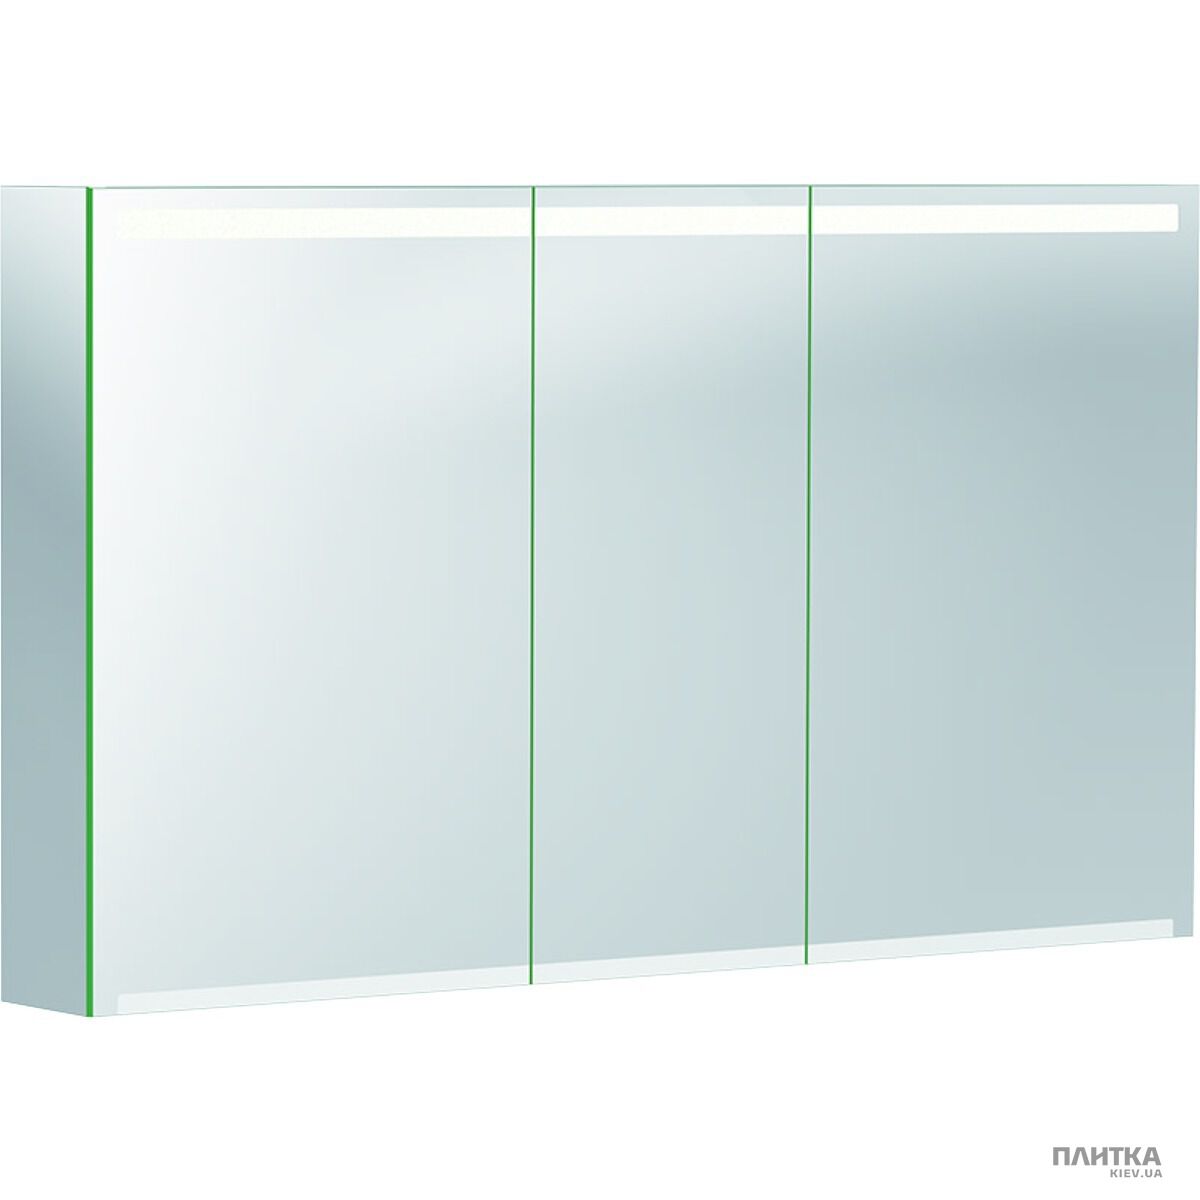 Зеркальный шкаф Geberit Option 500.207.00.1 Option Зеркальный шкафчик 120 см, с подсветкой, с 3 дверцами: корпус зеркальный, дверцы зеркальные снаружи и внутри зеркало